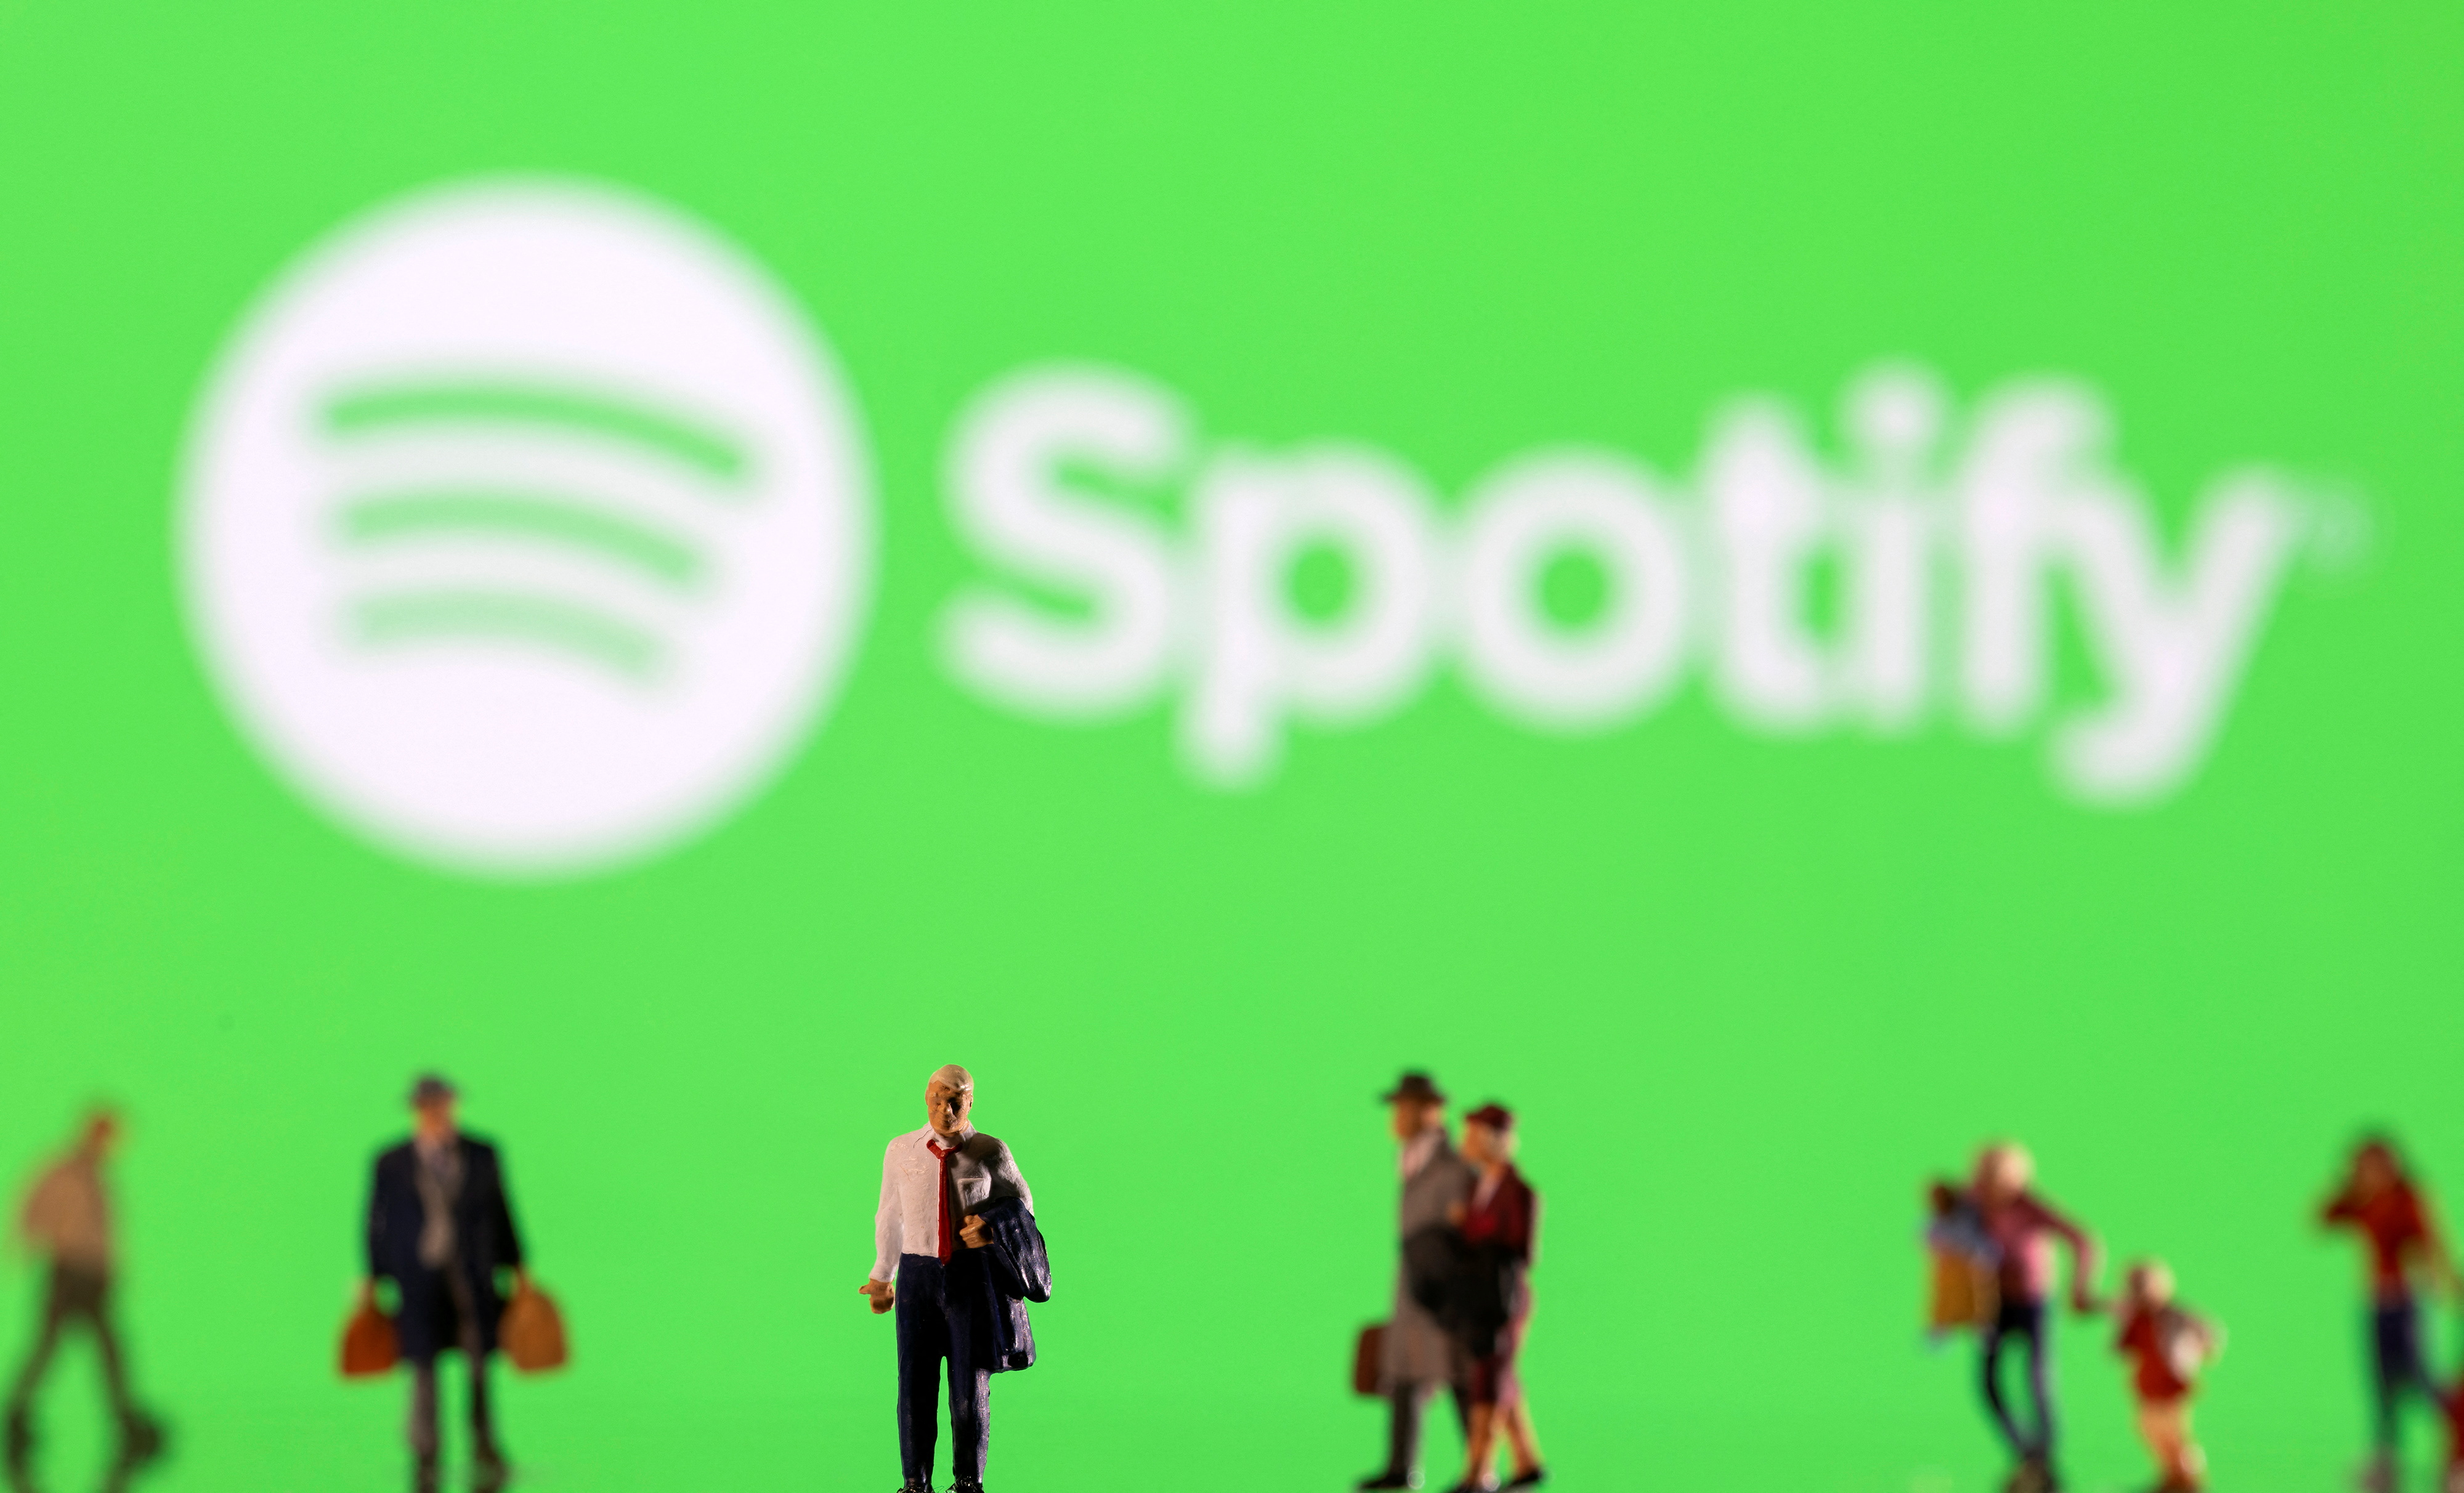 Die Abbildung zeigt kleine Figuren und das angezeigte Spotify-Logo